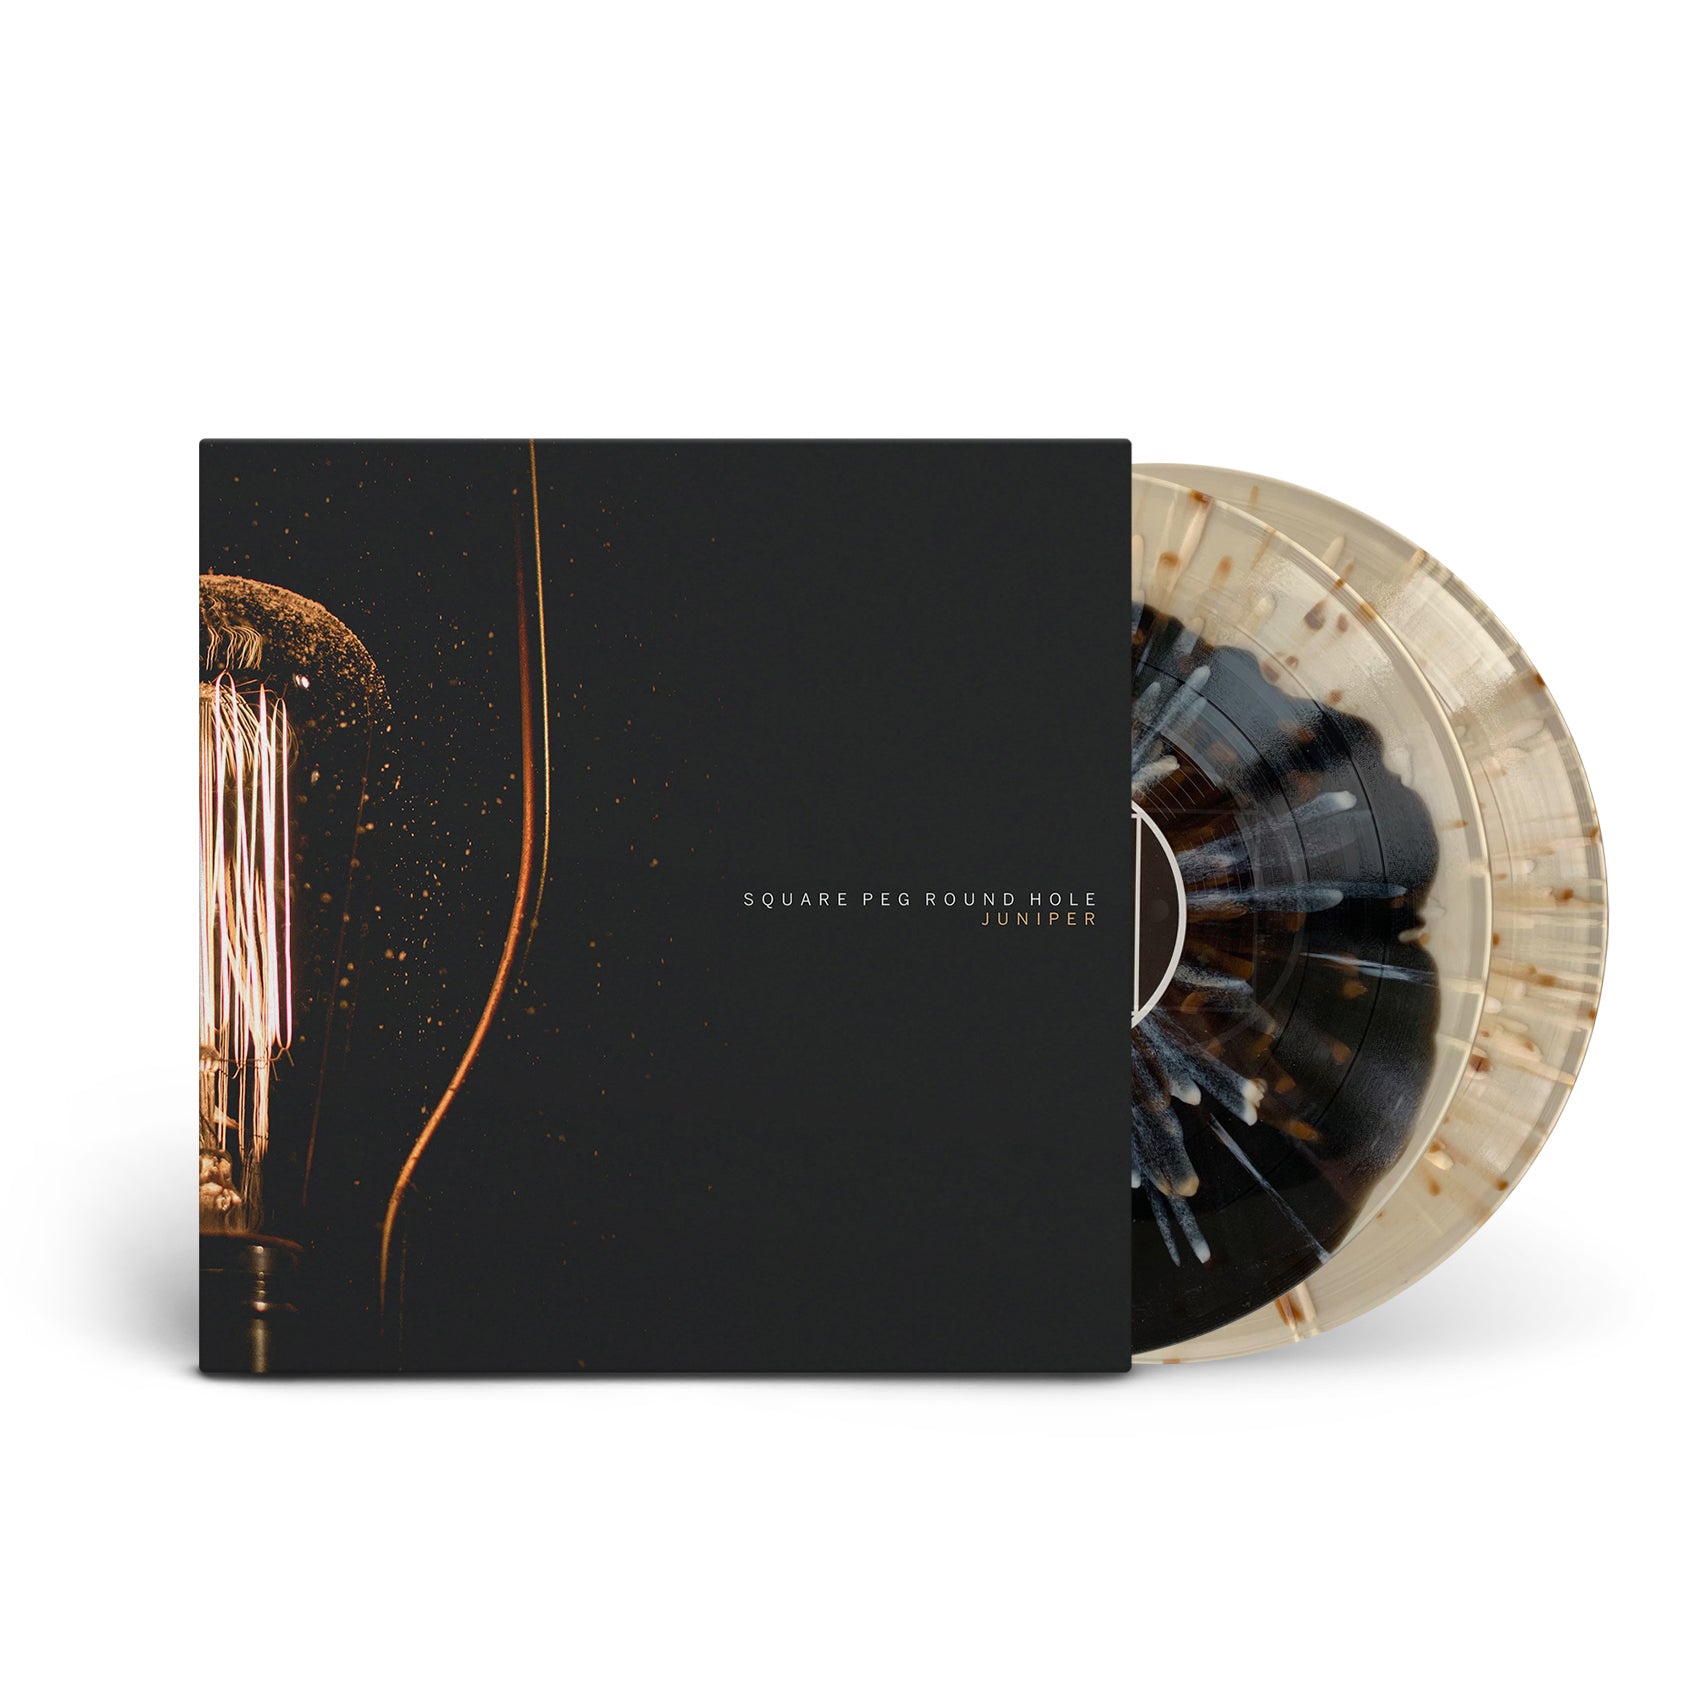 Vinyl – Spartan Records